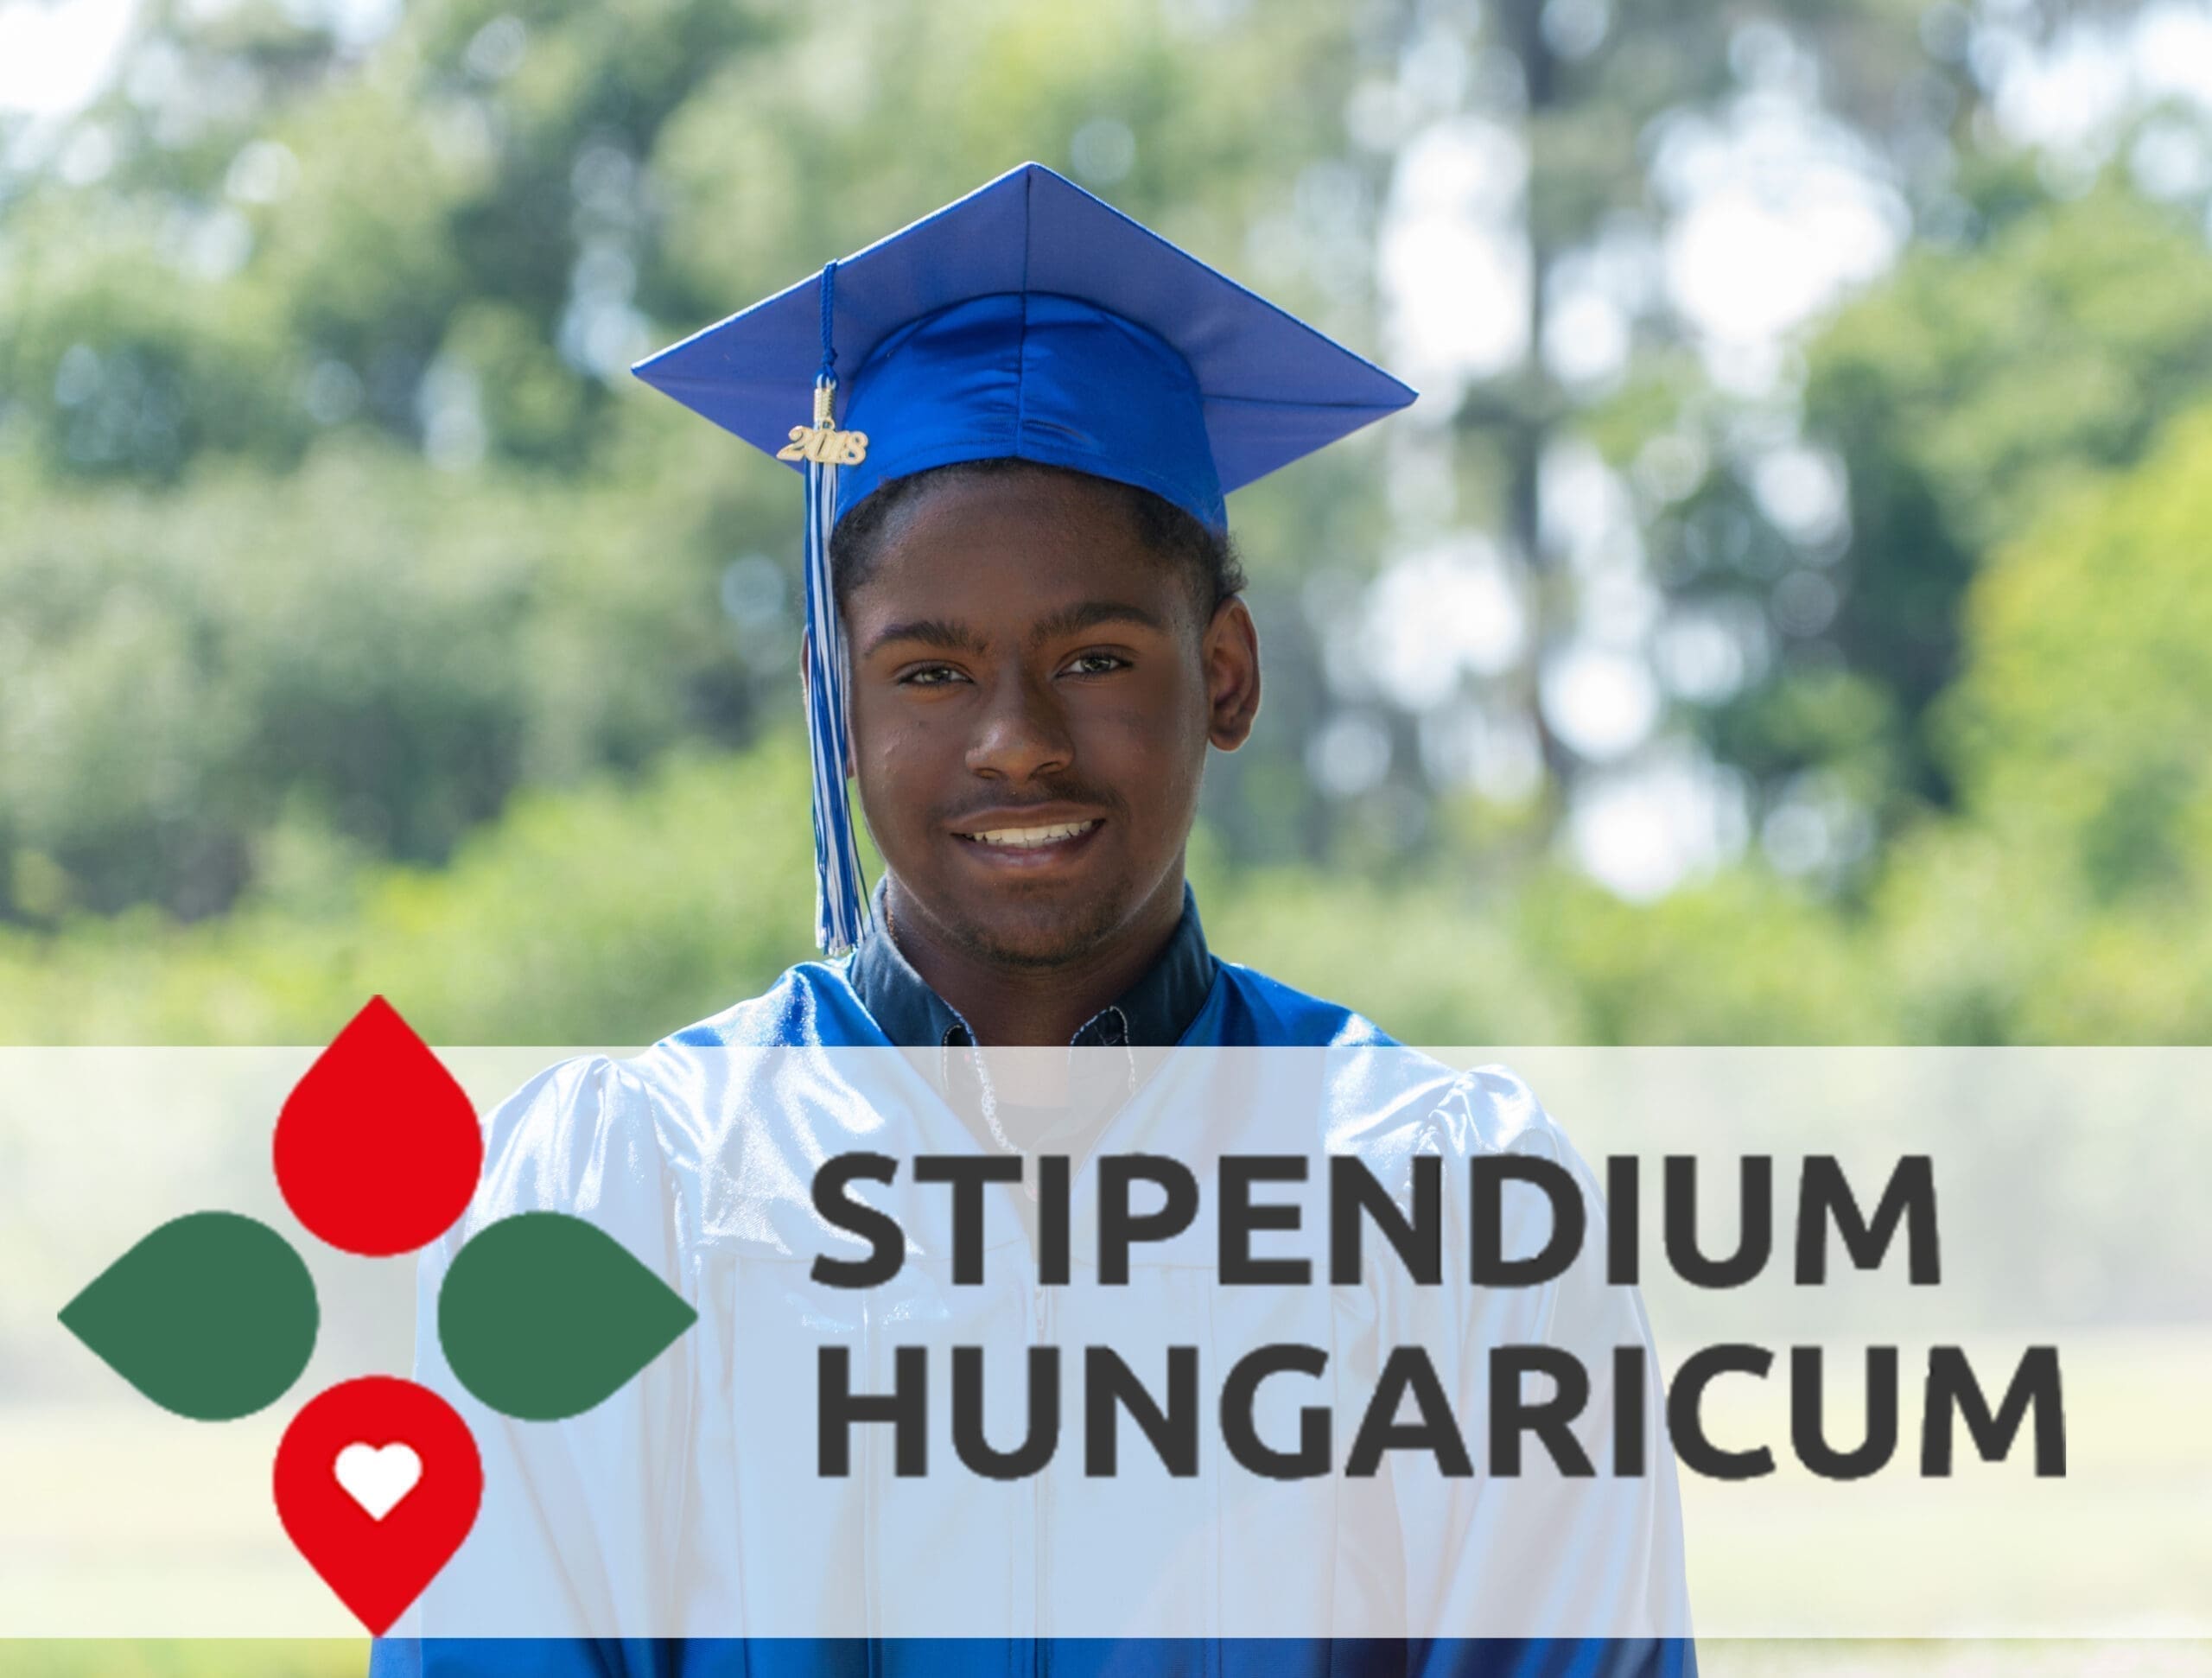 Stipendium Hungaricum scholarship